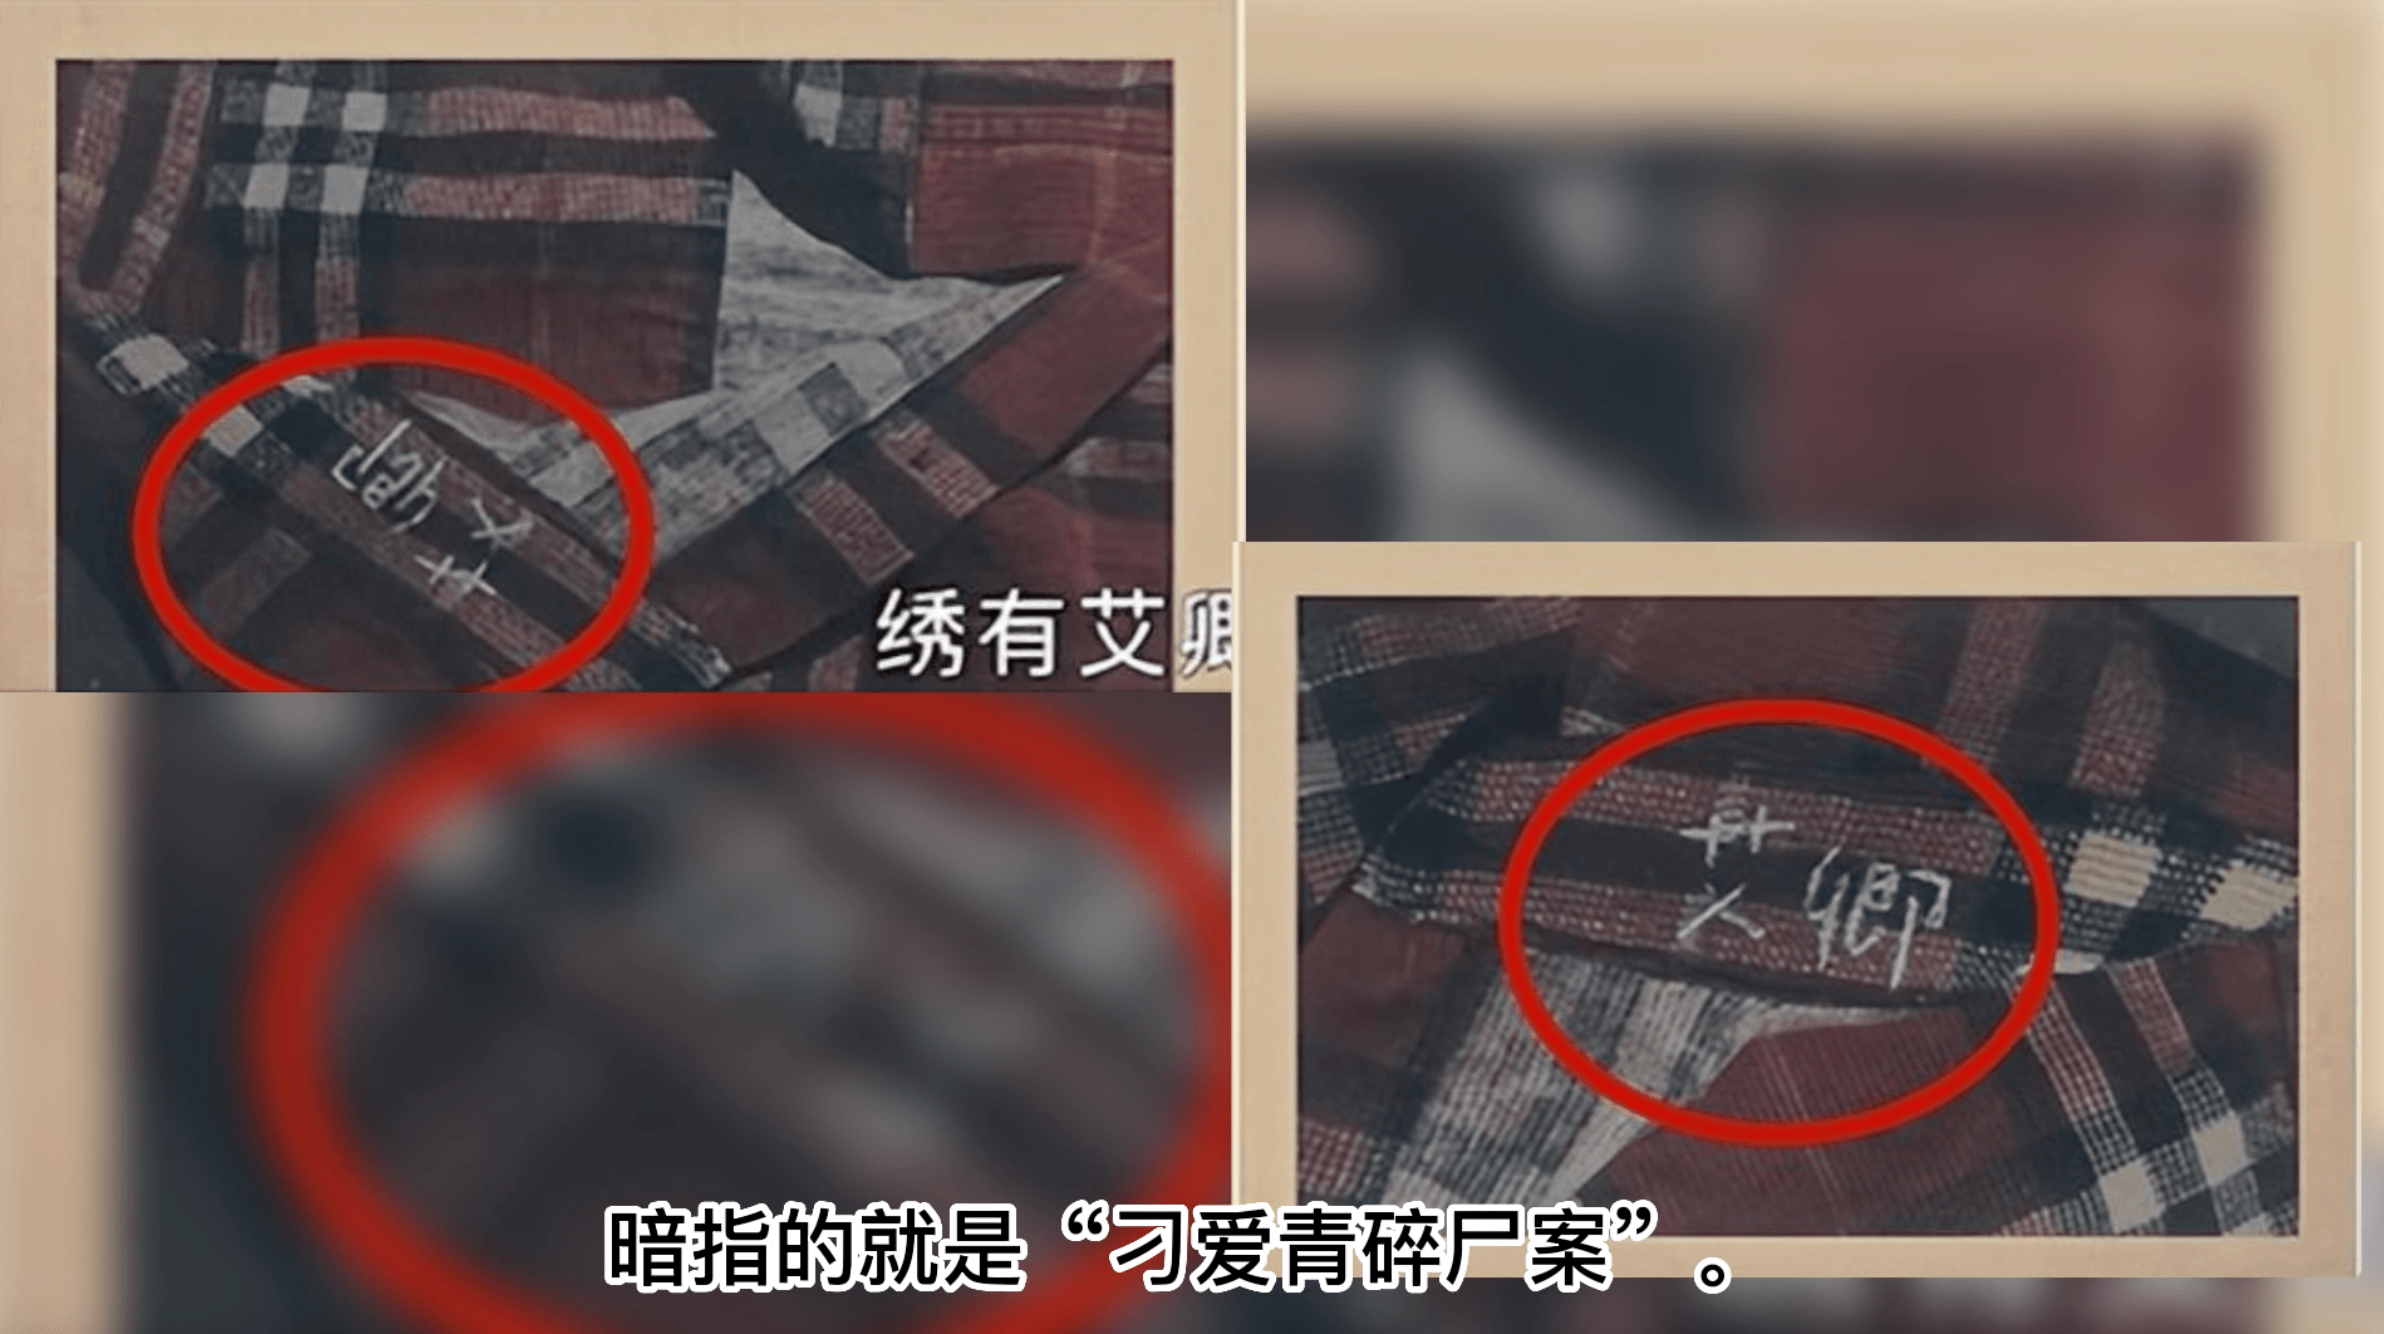 南京1996年碎尸案图片图片